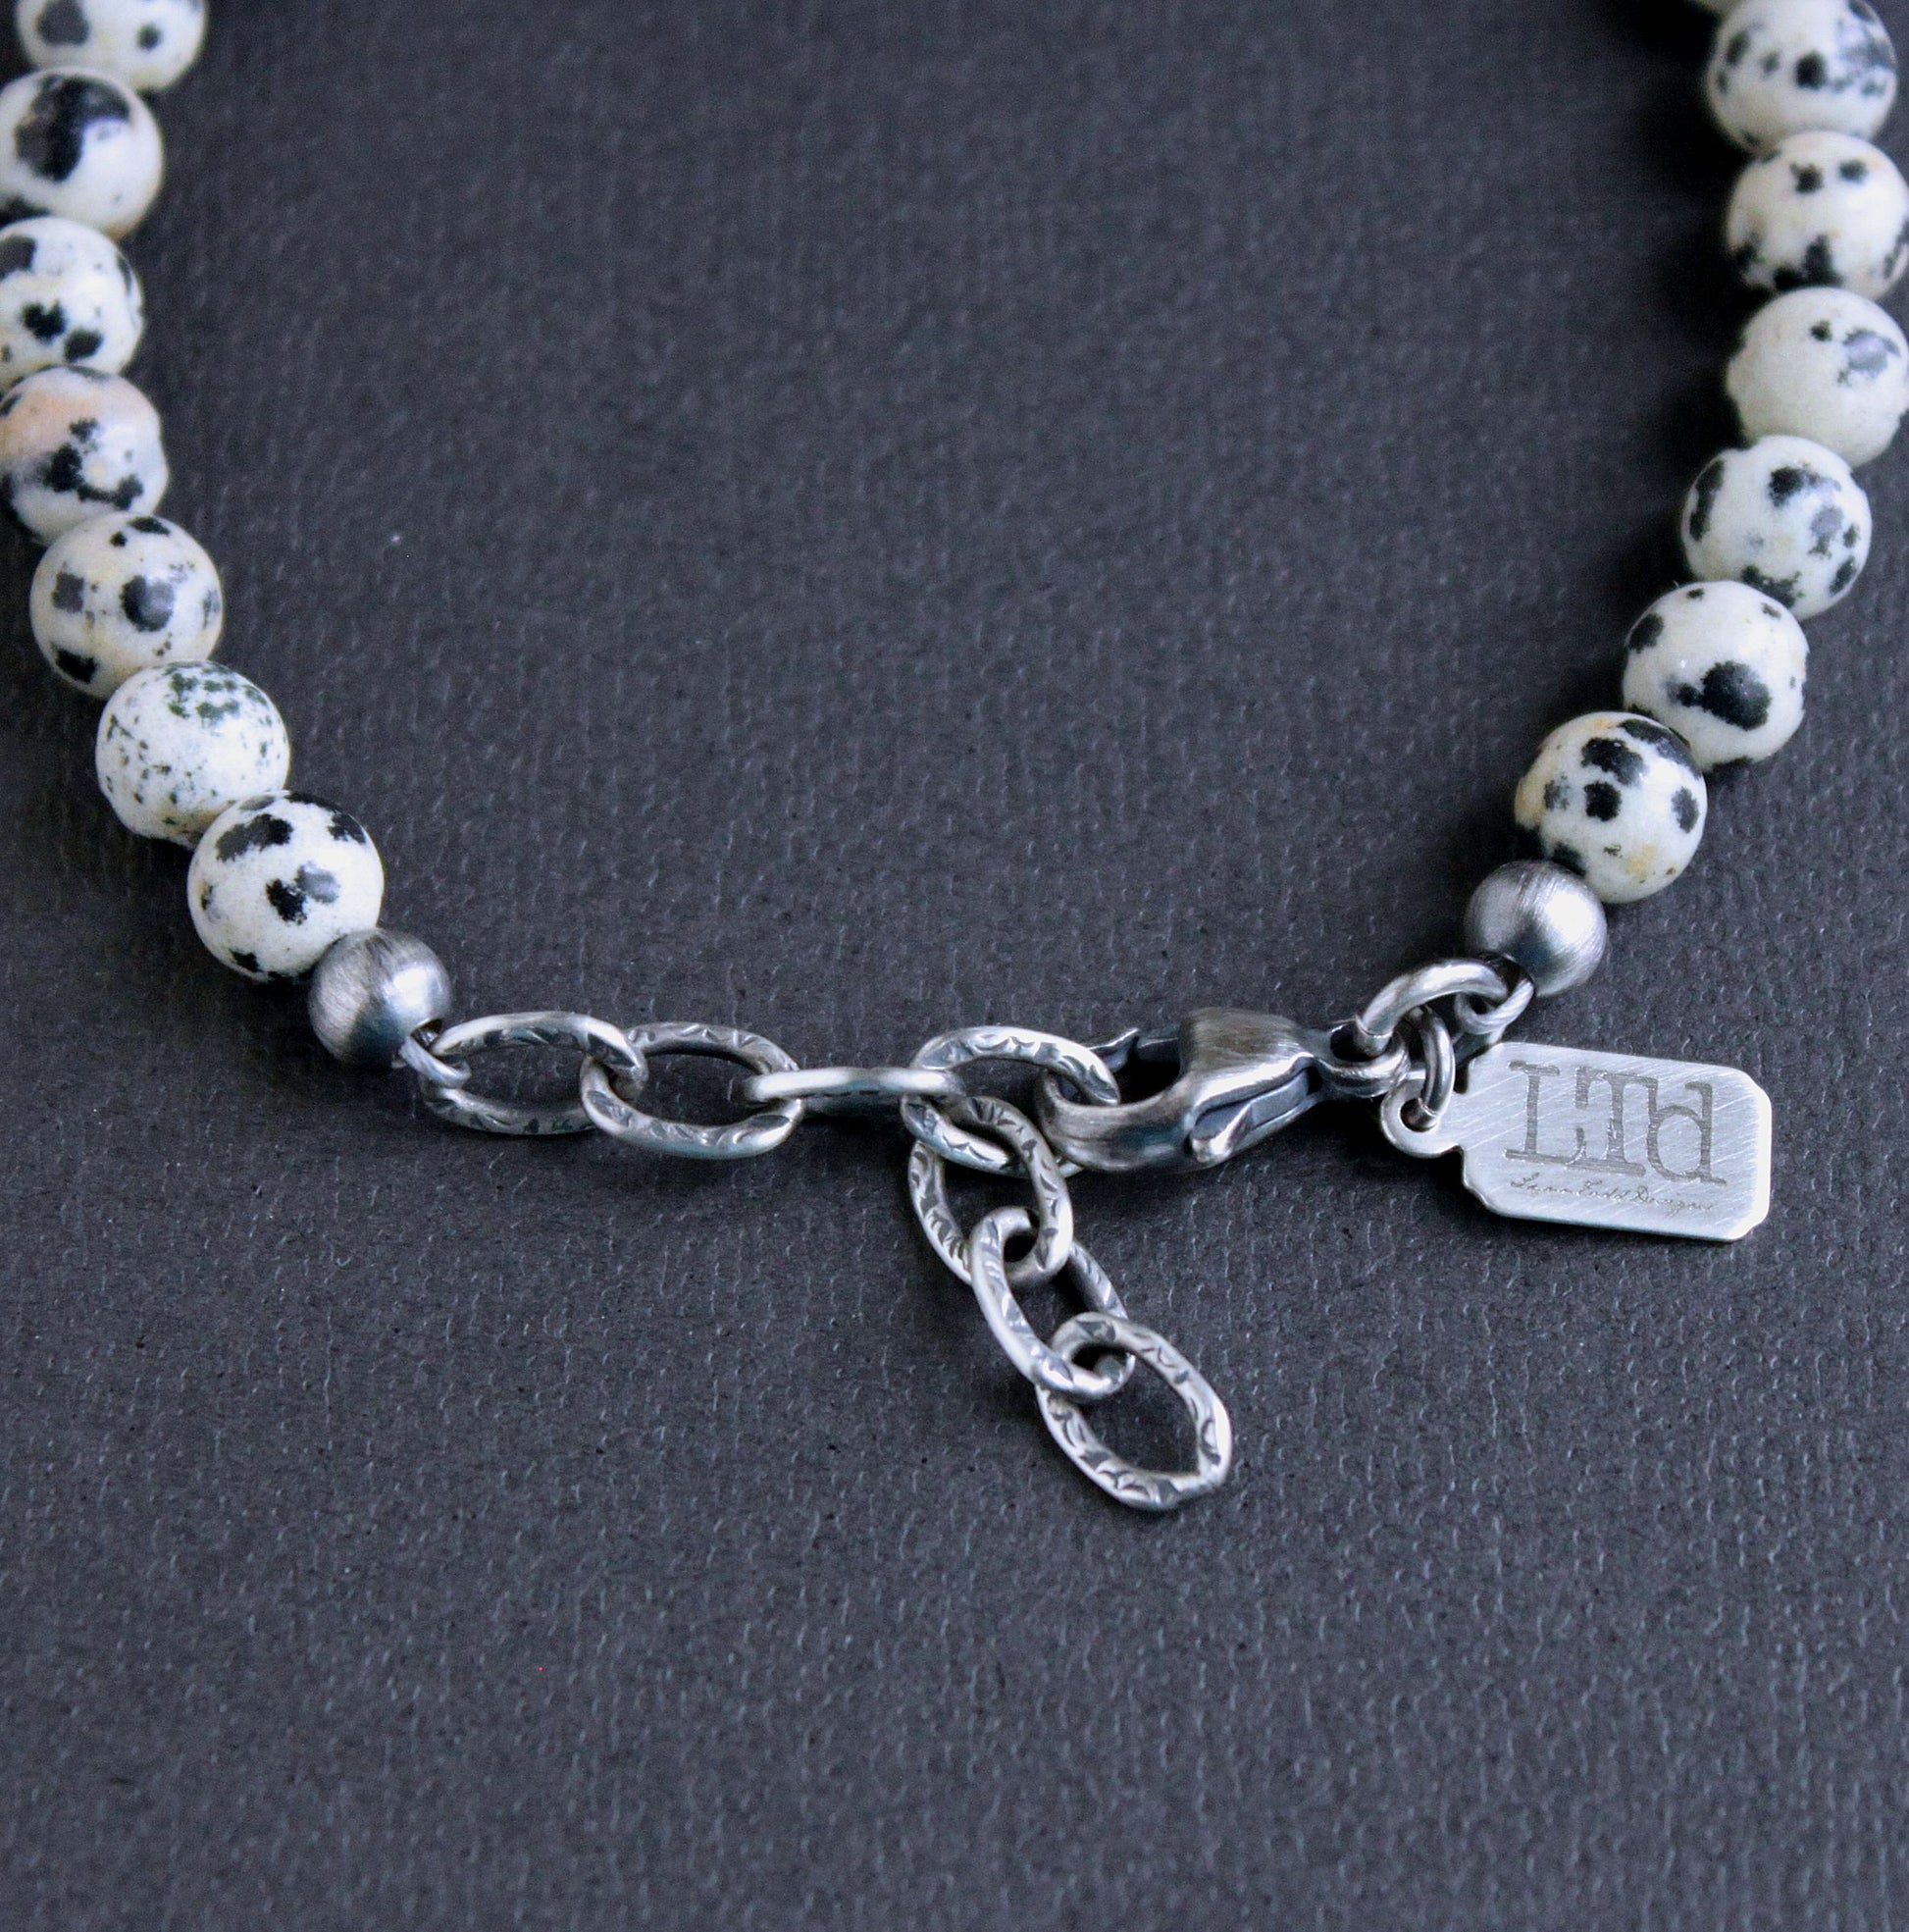 Men's adjustable 6mm bead bracelet